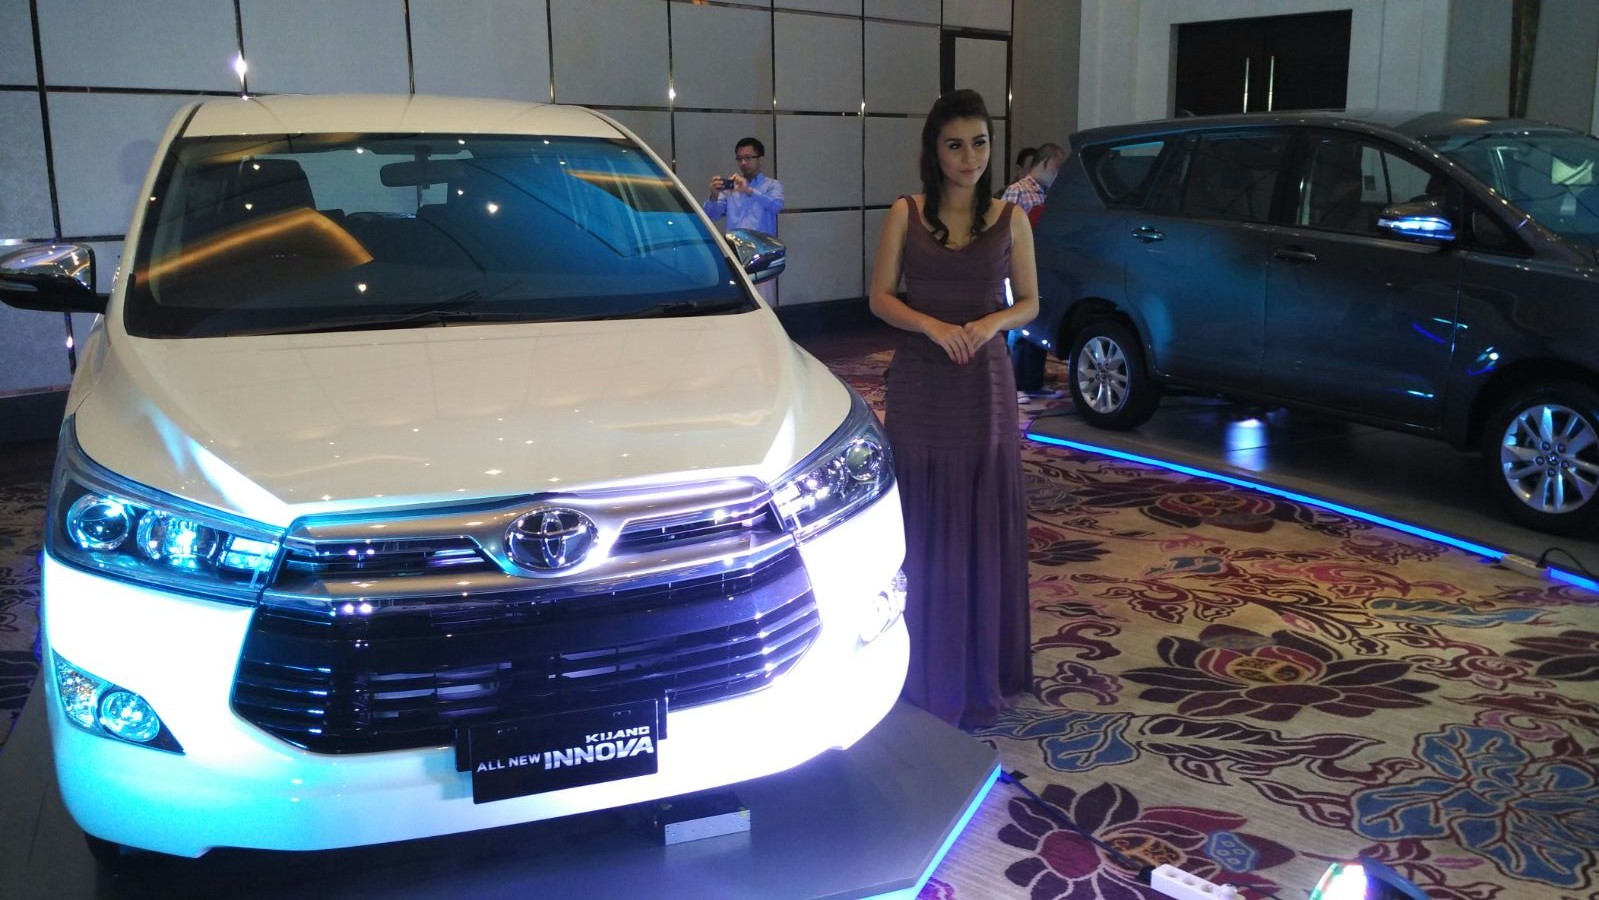 Berita, All New Toyota Kijang Innova 2016: All New Toyota Kijang Innova 2016 Diluncurkan di Indonesia!